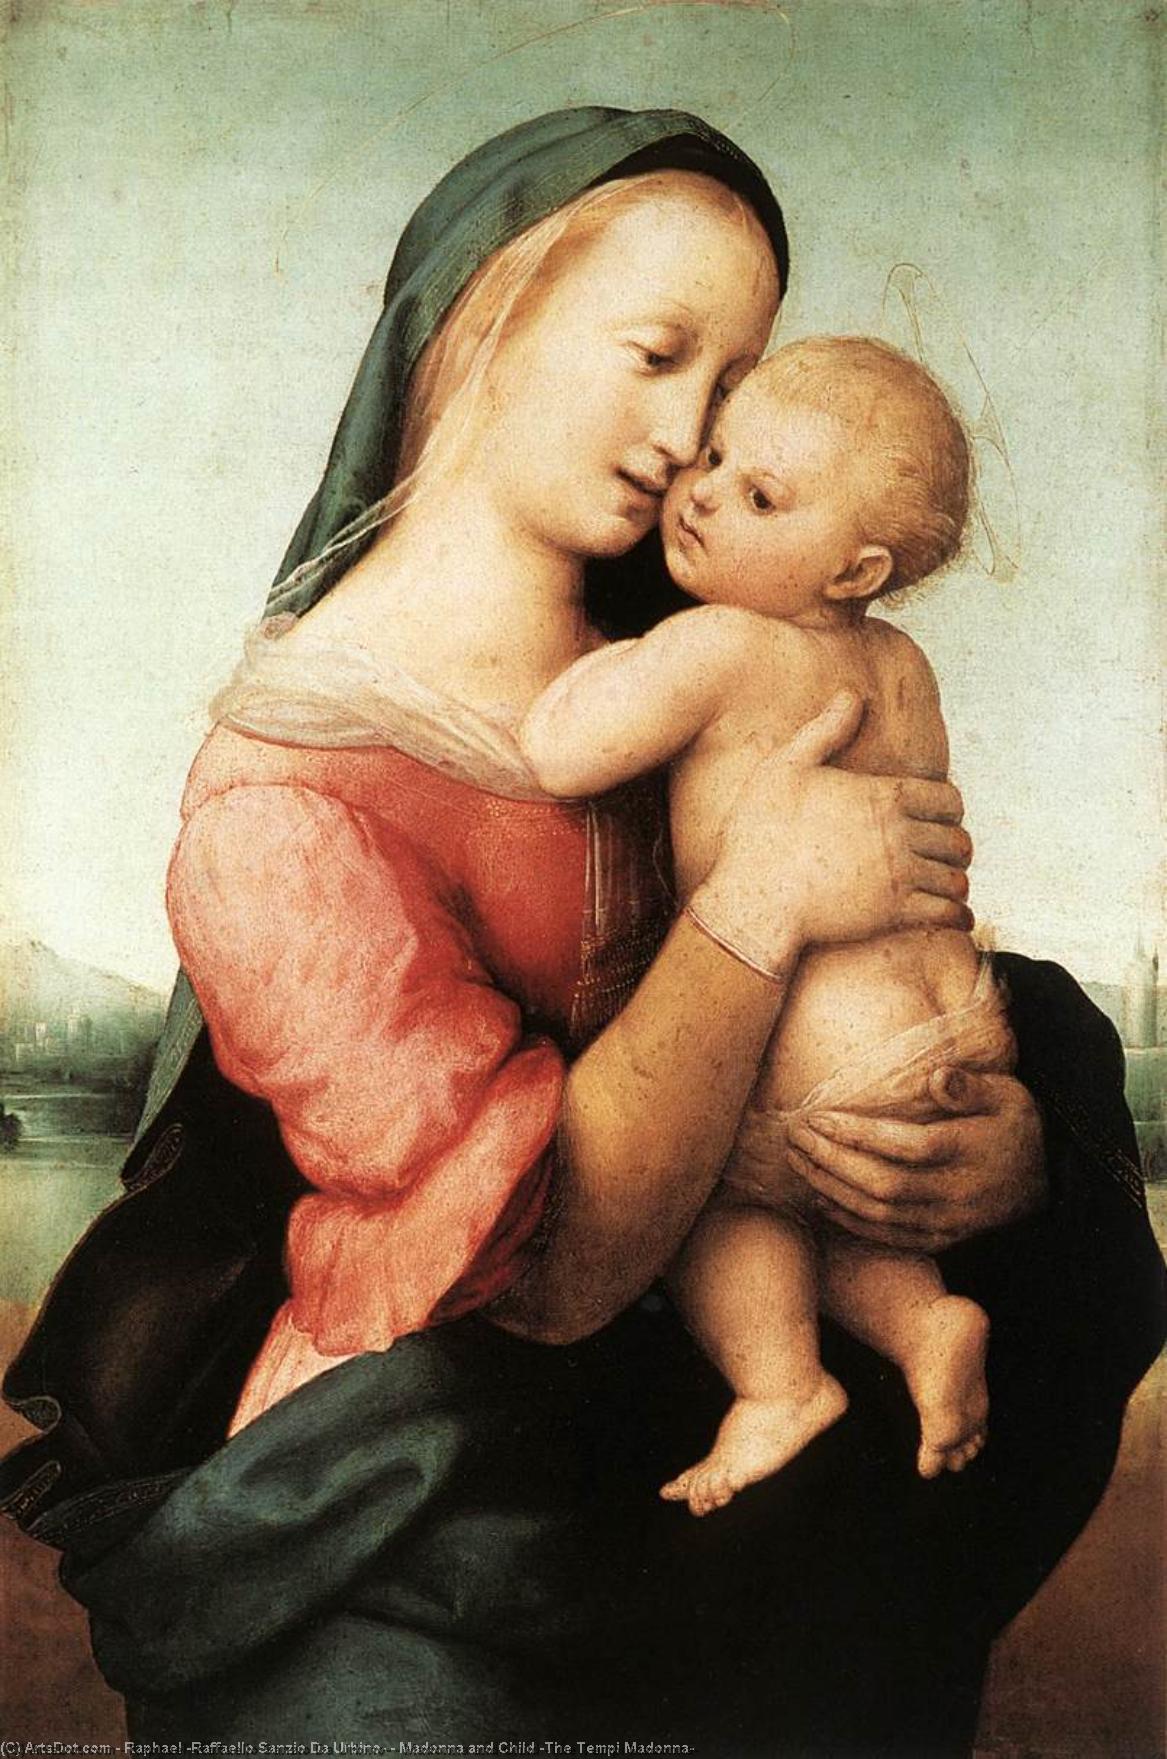 WikiOO.org - Enciclopédia das Belas Artes - Pintura, Arte por Raphael (Raffaello Sanzio Da Urbino) - Madonna and Child (The Tempi Madonna)